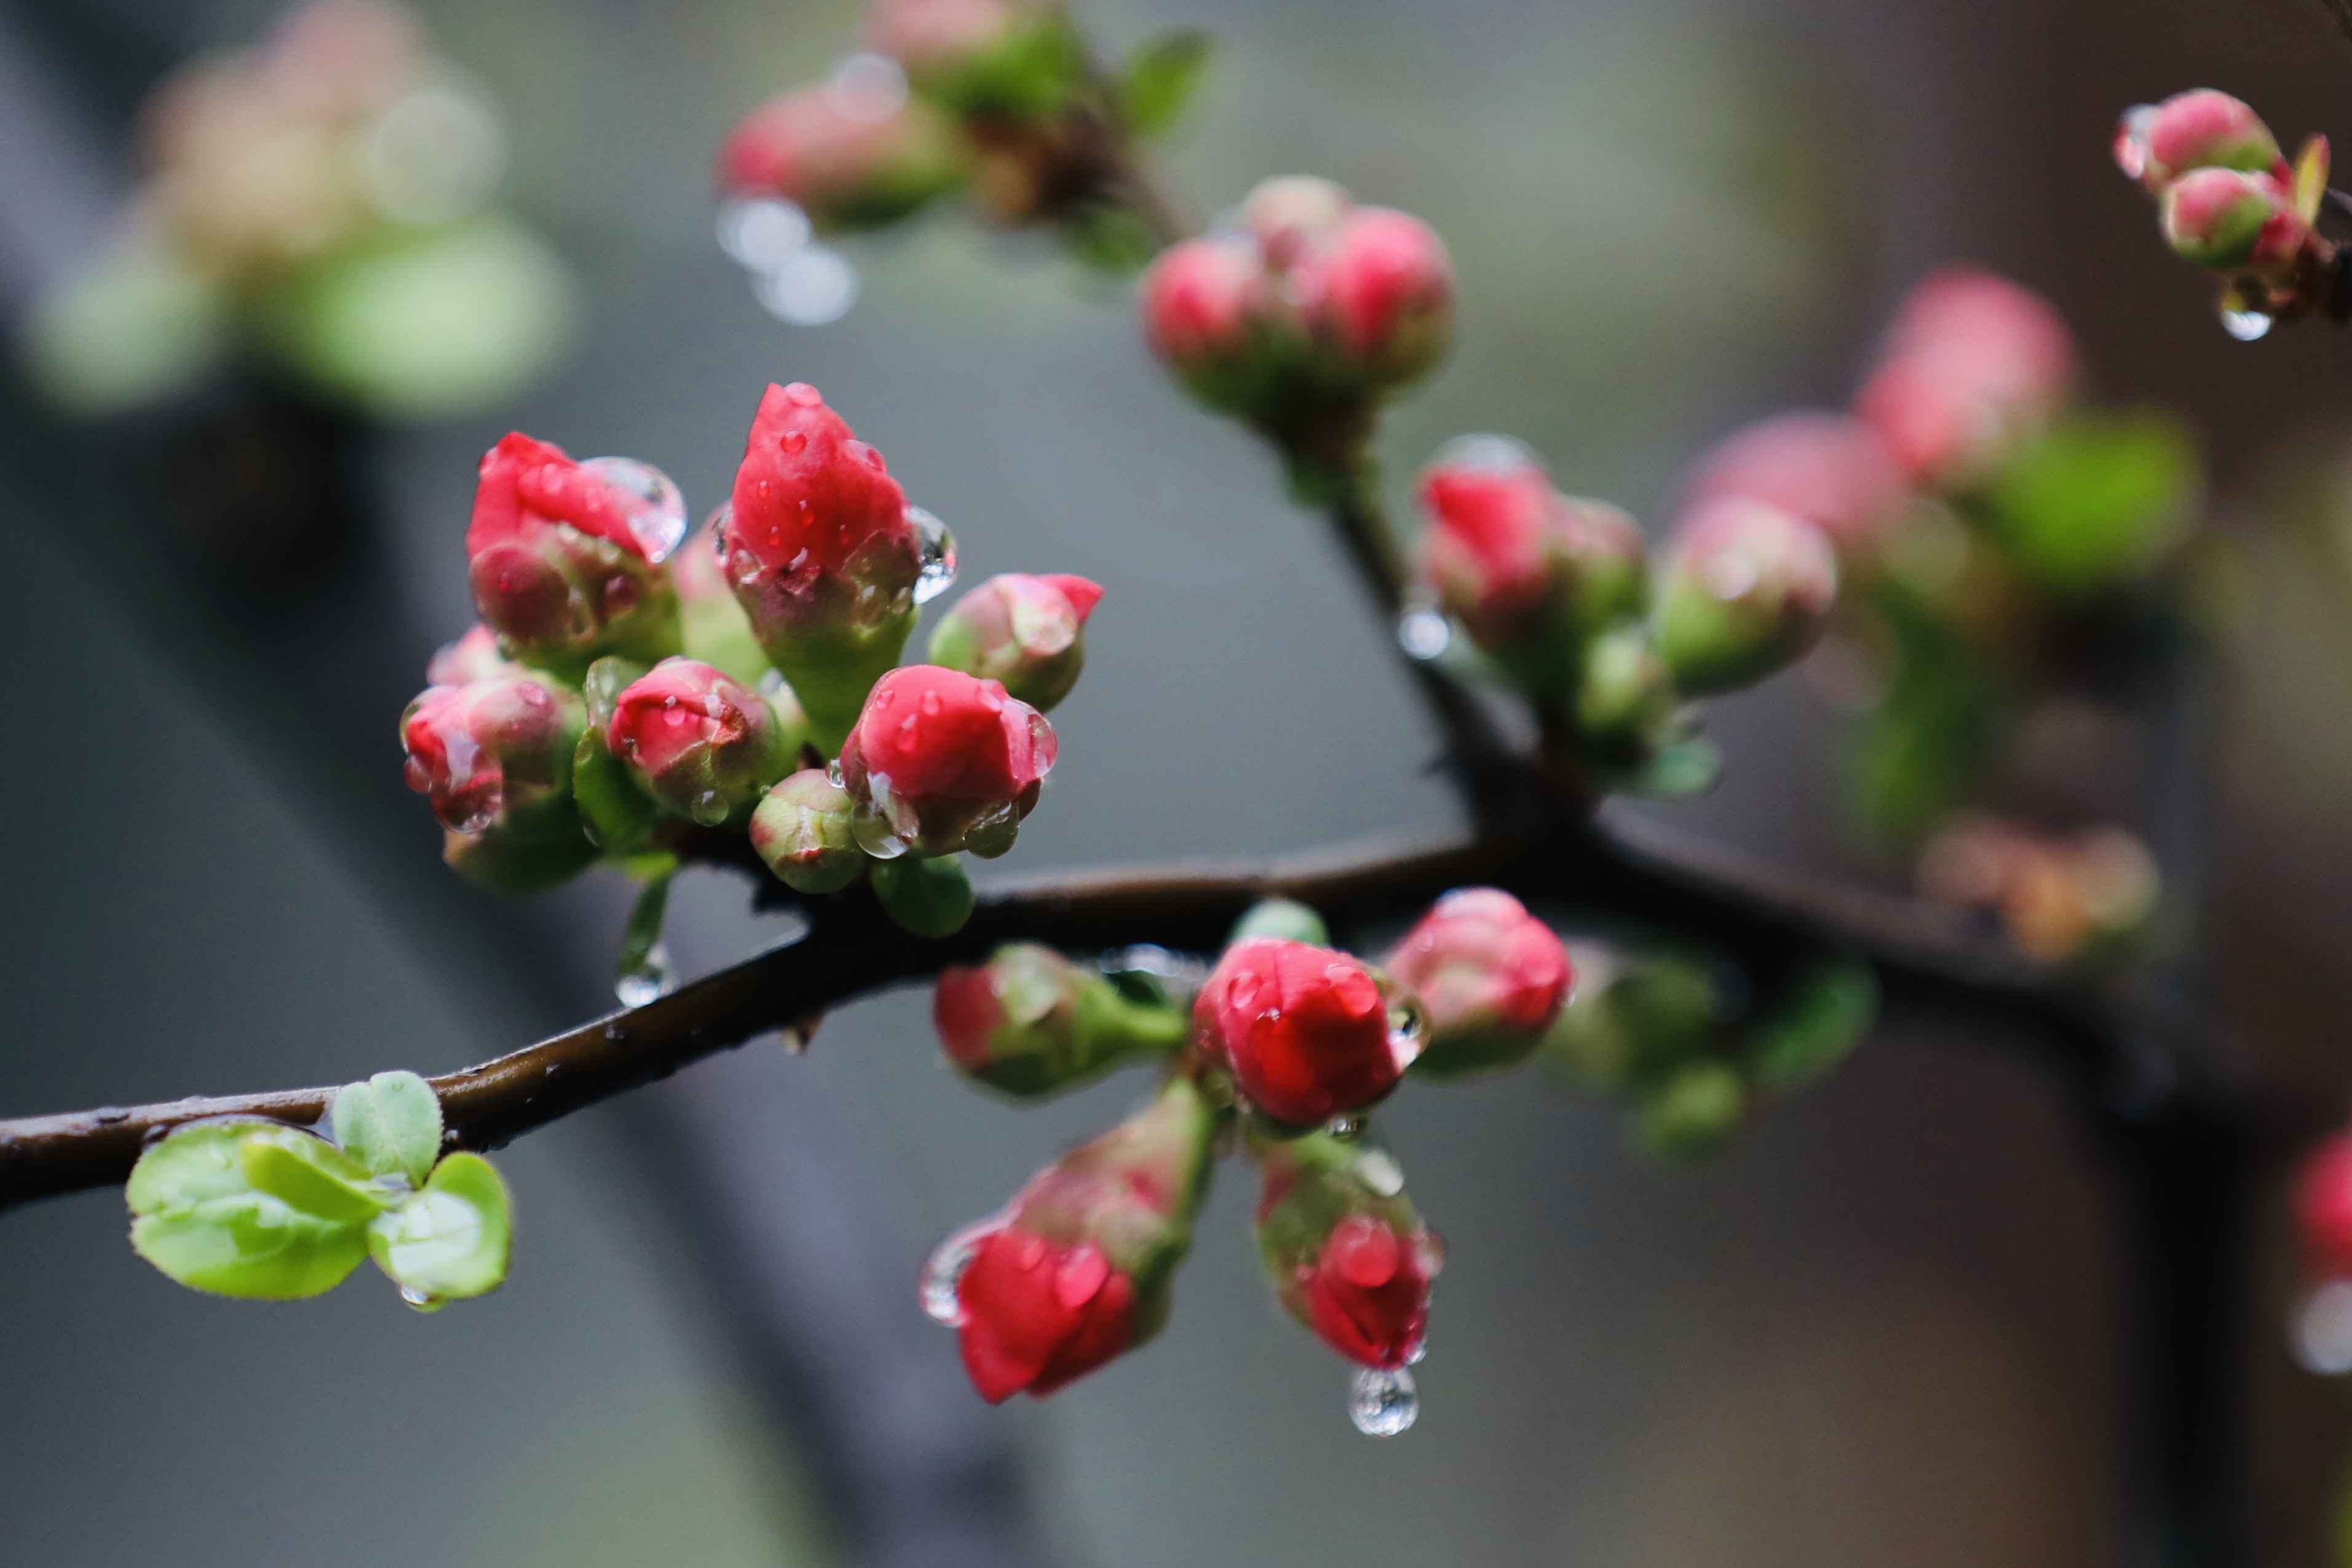 2021年2月24日夜,泉城济南下了一场小雨,雨露滋润中的海棠花,春雨润物